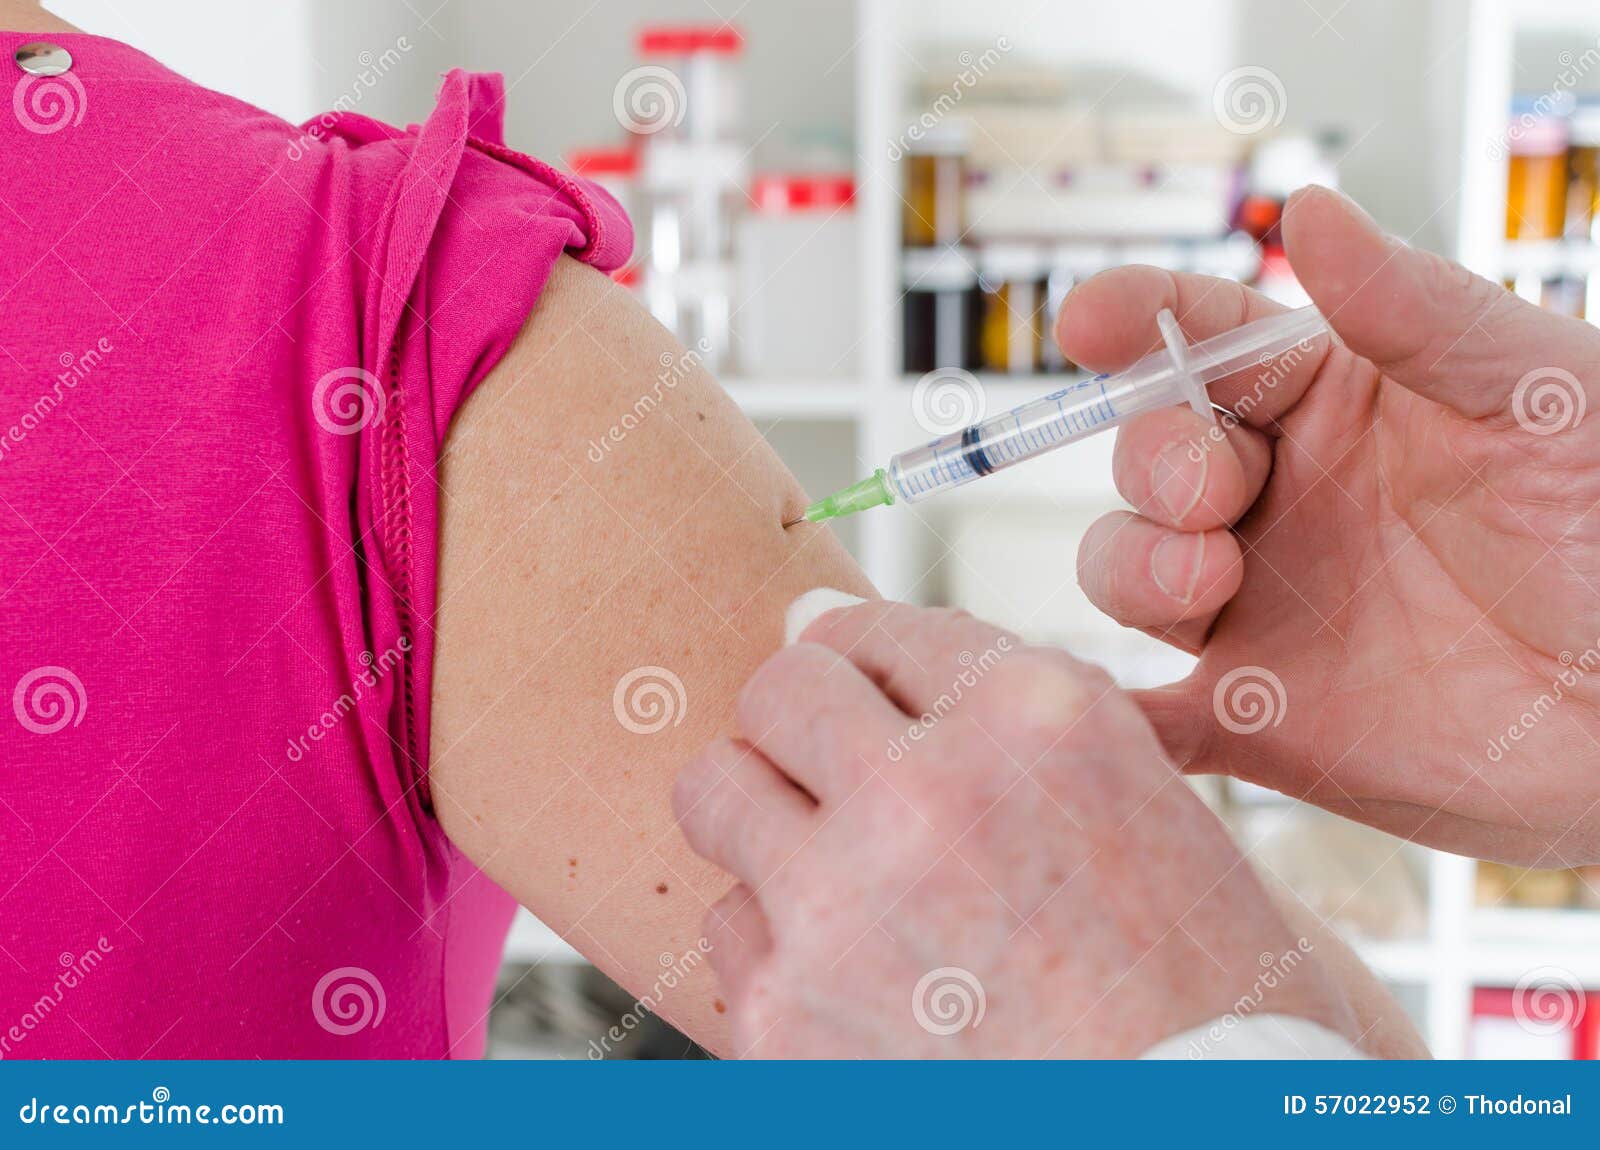 Тело вакцин. Уколы для ОРВИ. 4 Укола от заражение крови. Doctor gives an Injection. Есть ли случаи заражения вен.заболеваниями от уколов красоты.